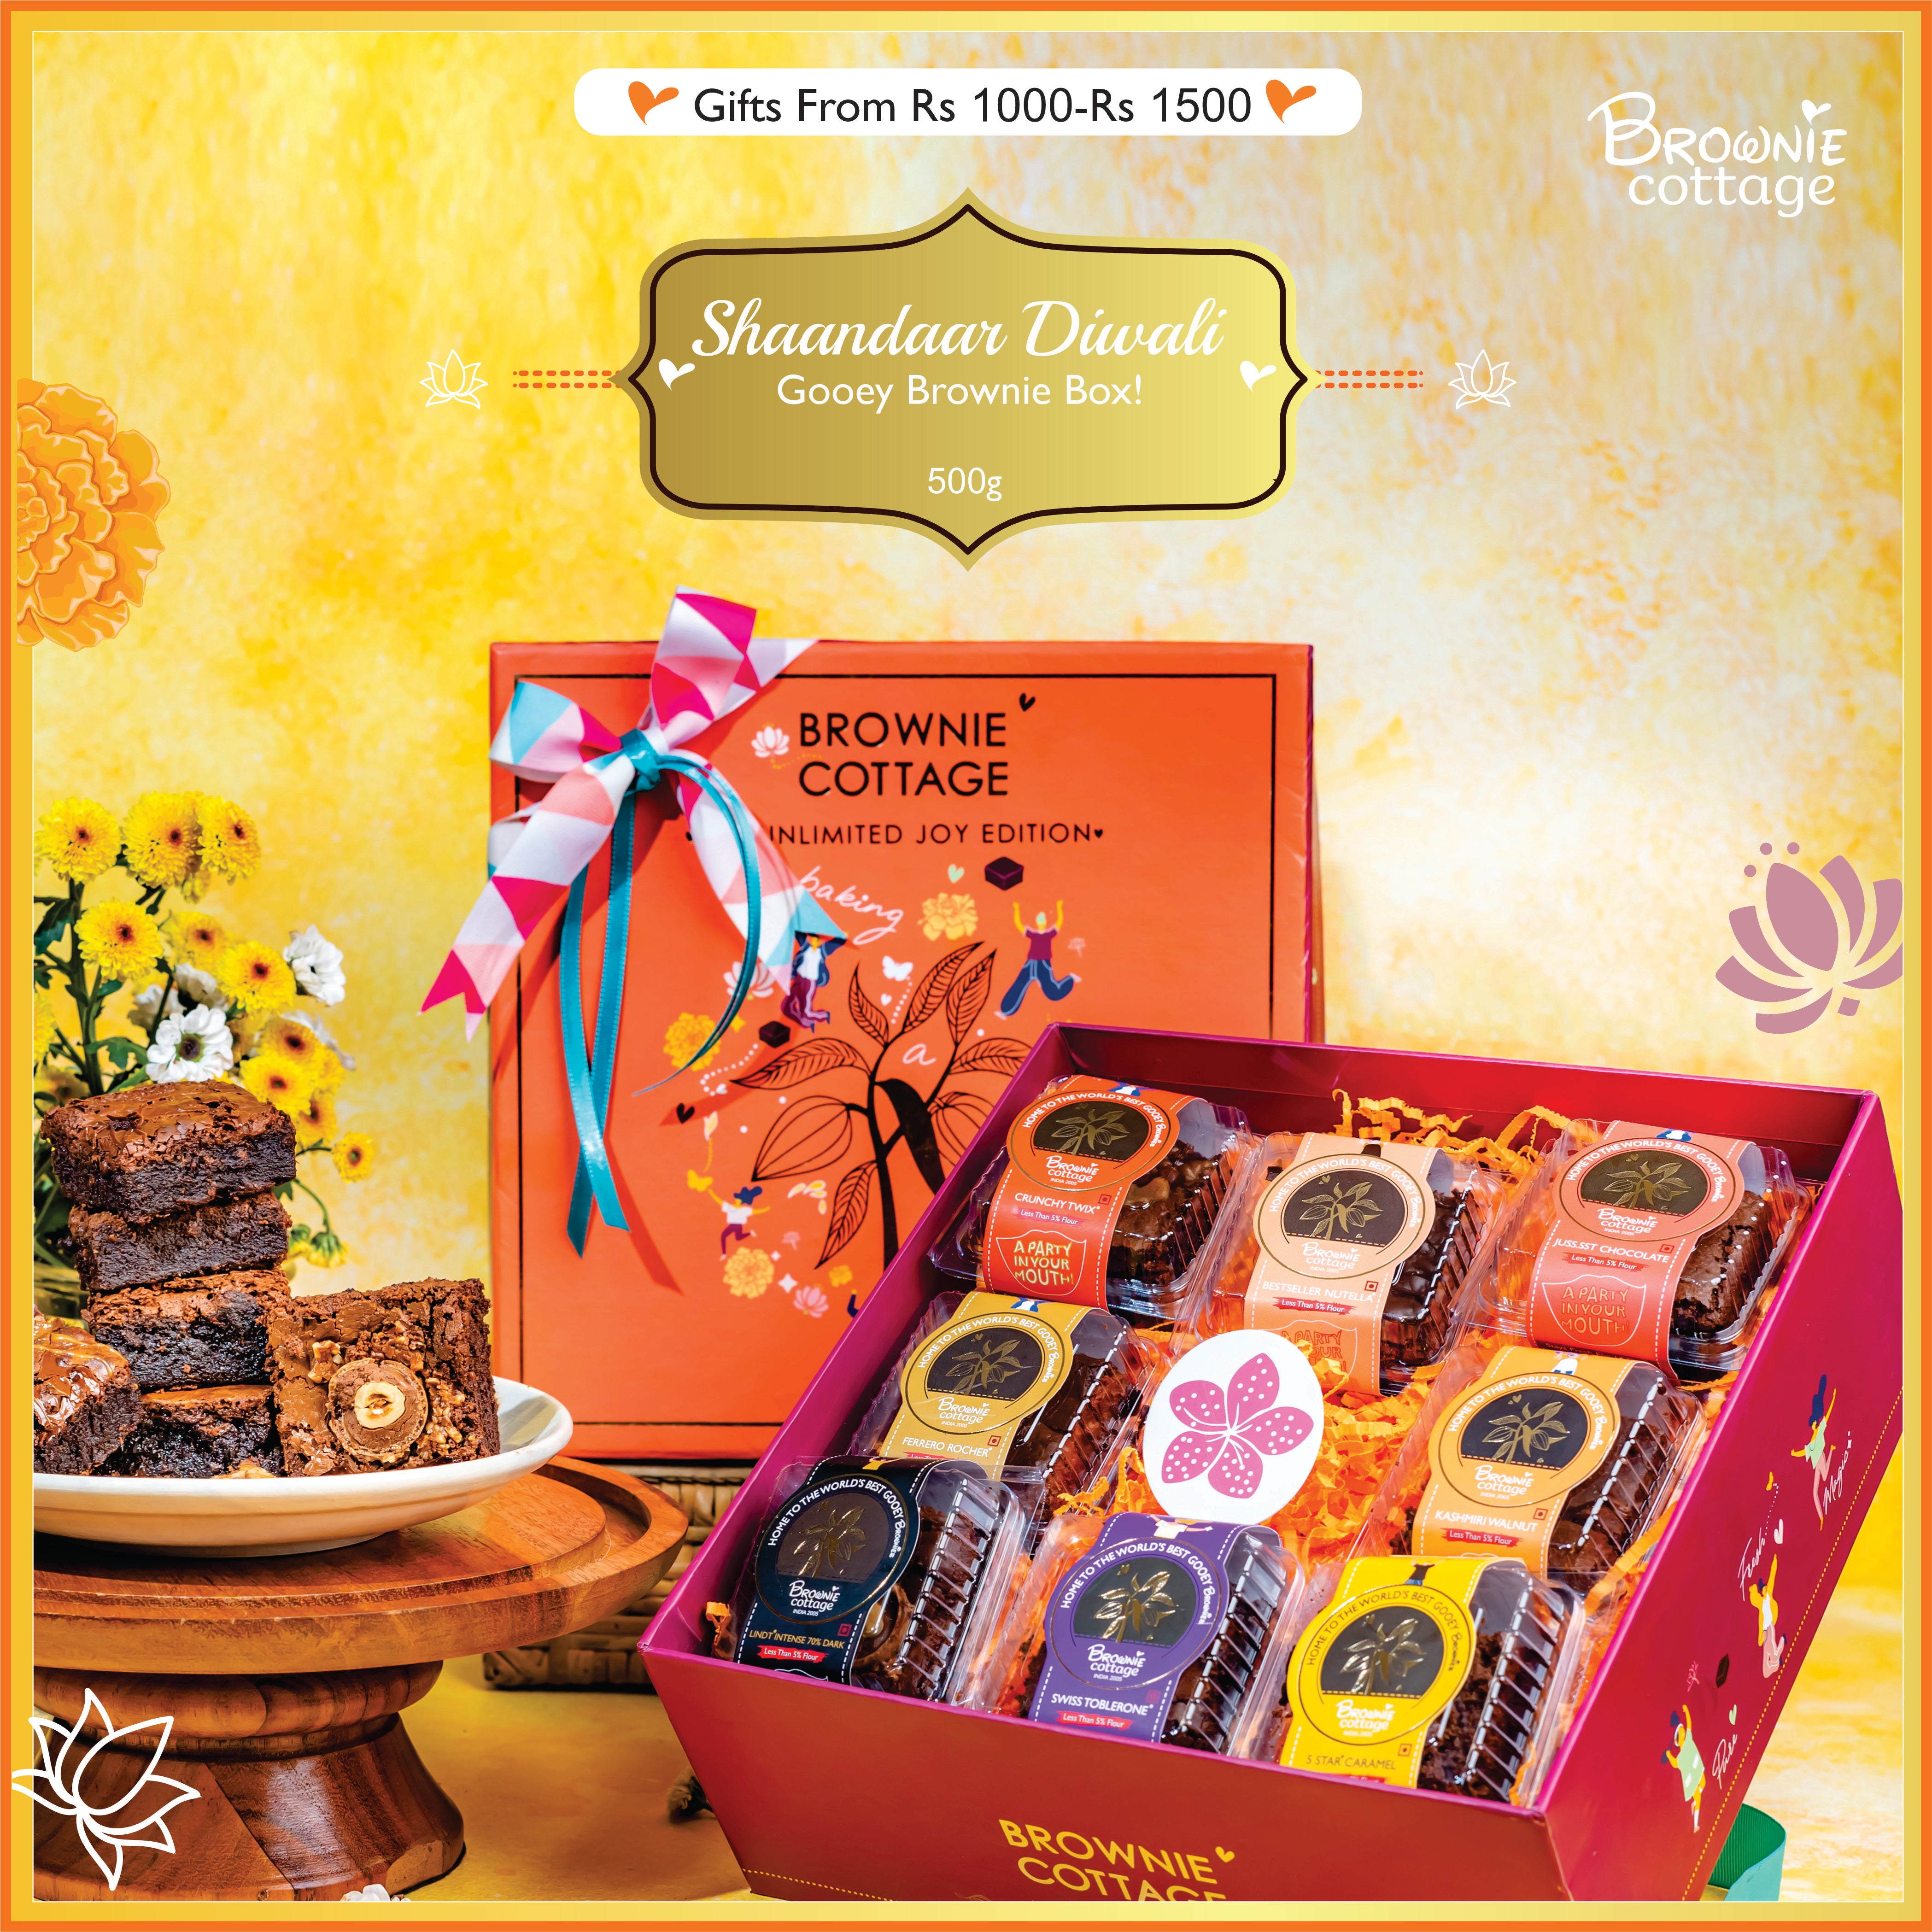 Shaandaar Diwali Gooey Brownie Box!